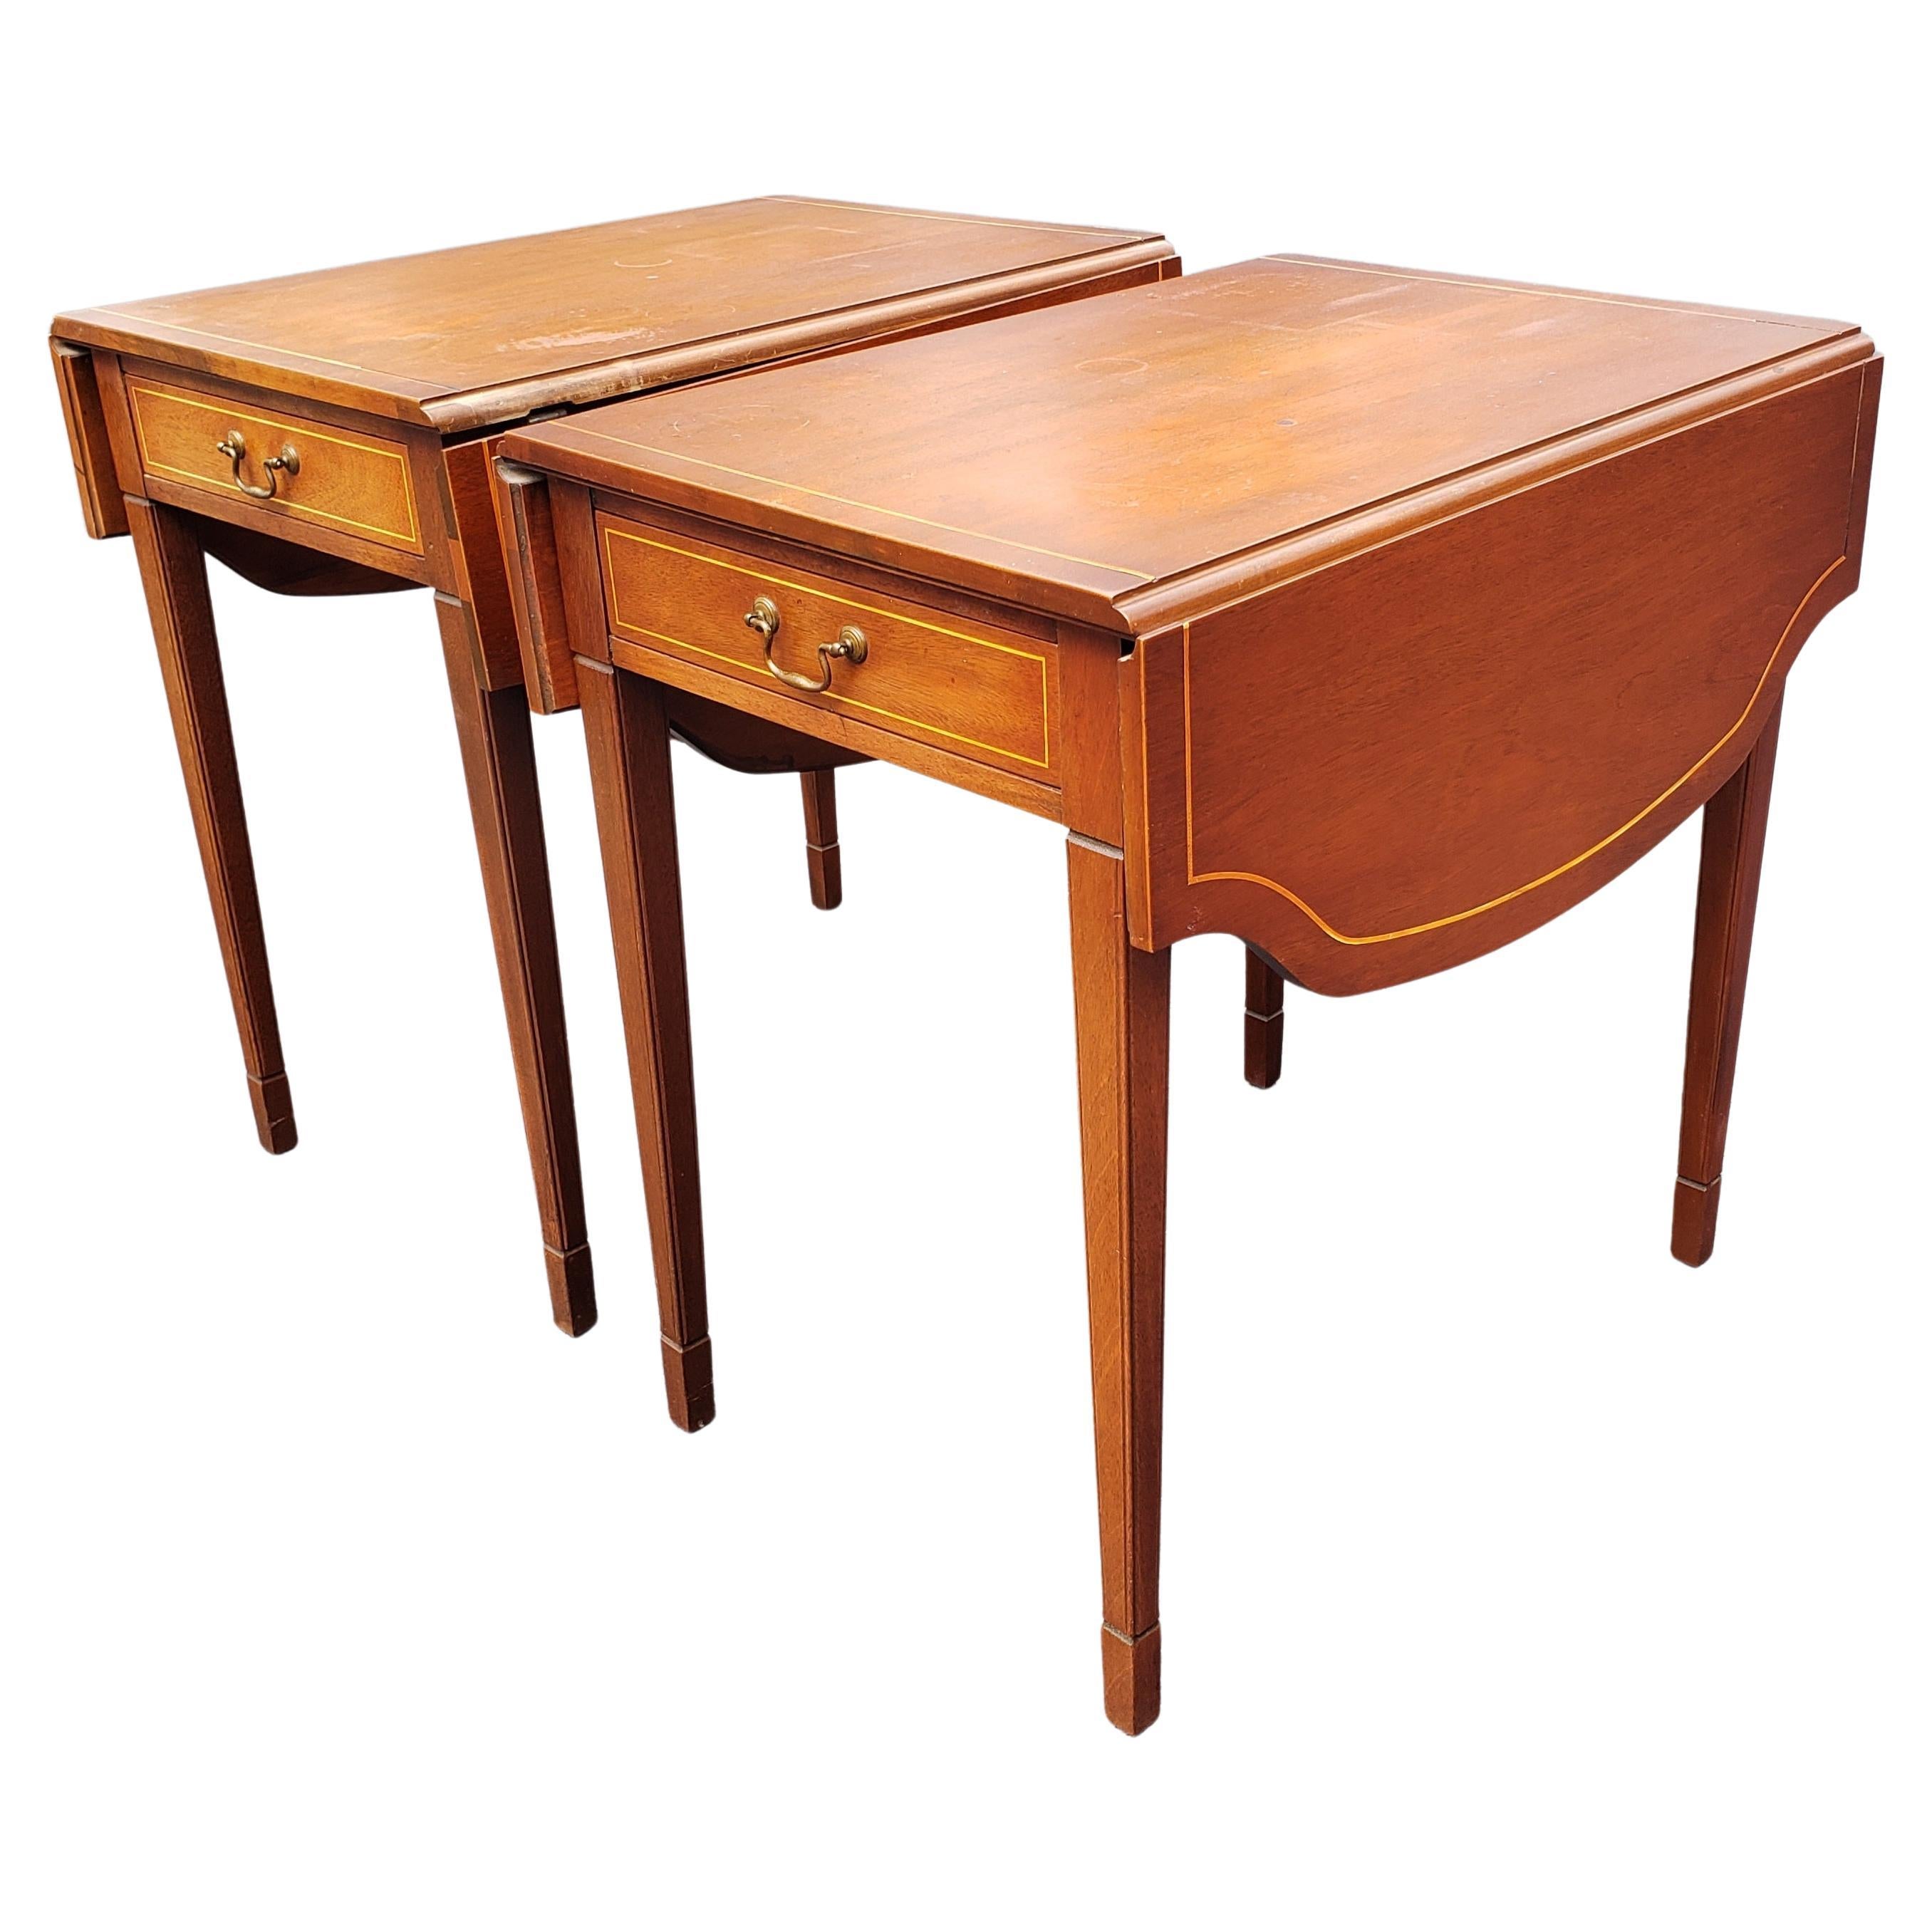 Ein exquisites Paar brandt Furniture zertifizierter echter Pembroke-Tische aus echtem Mahagoni aus den 1940er Jahren mit hängenden Bändern. In hervorragendem Vintage-Zustand. 
Funktionale Schublade. Der Tisch scheint irgendwann nachgearbeitet